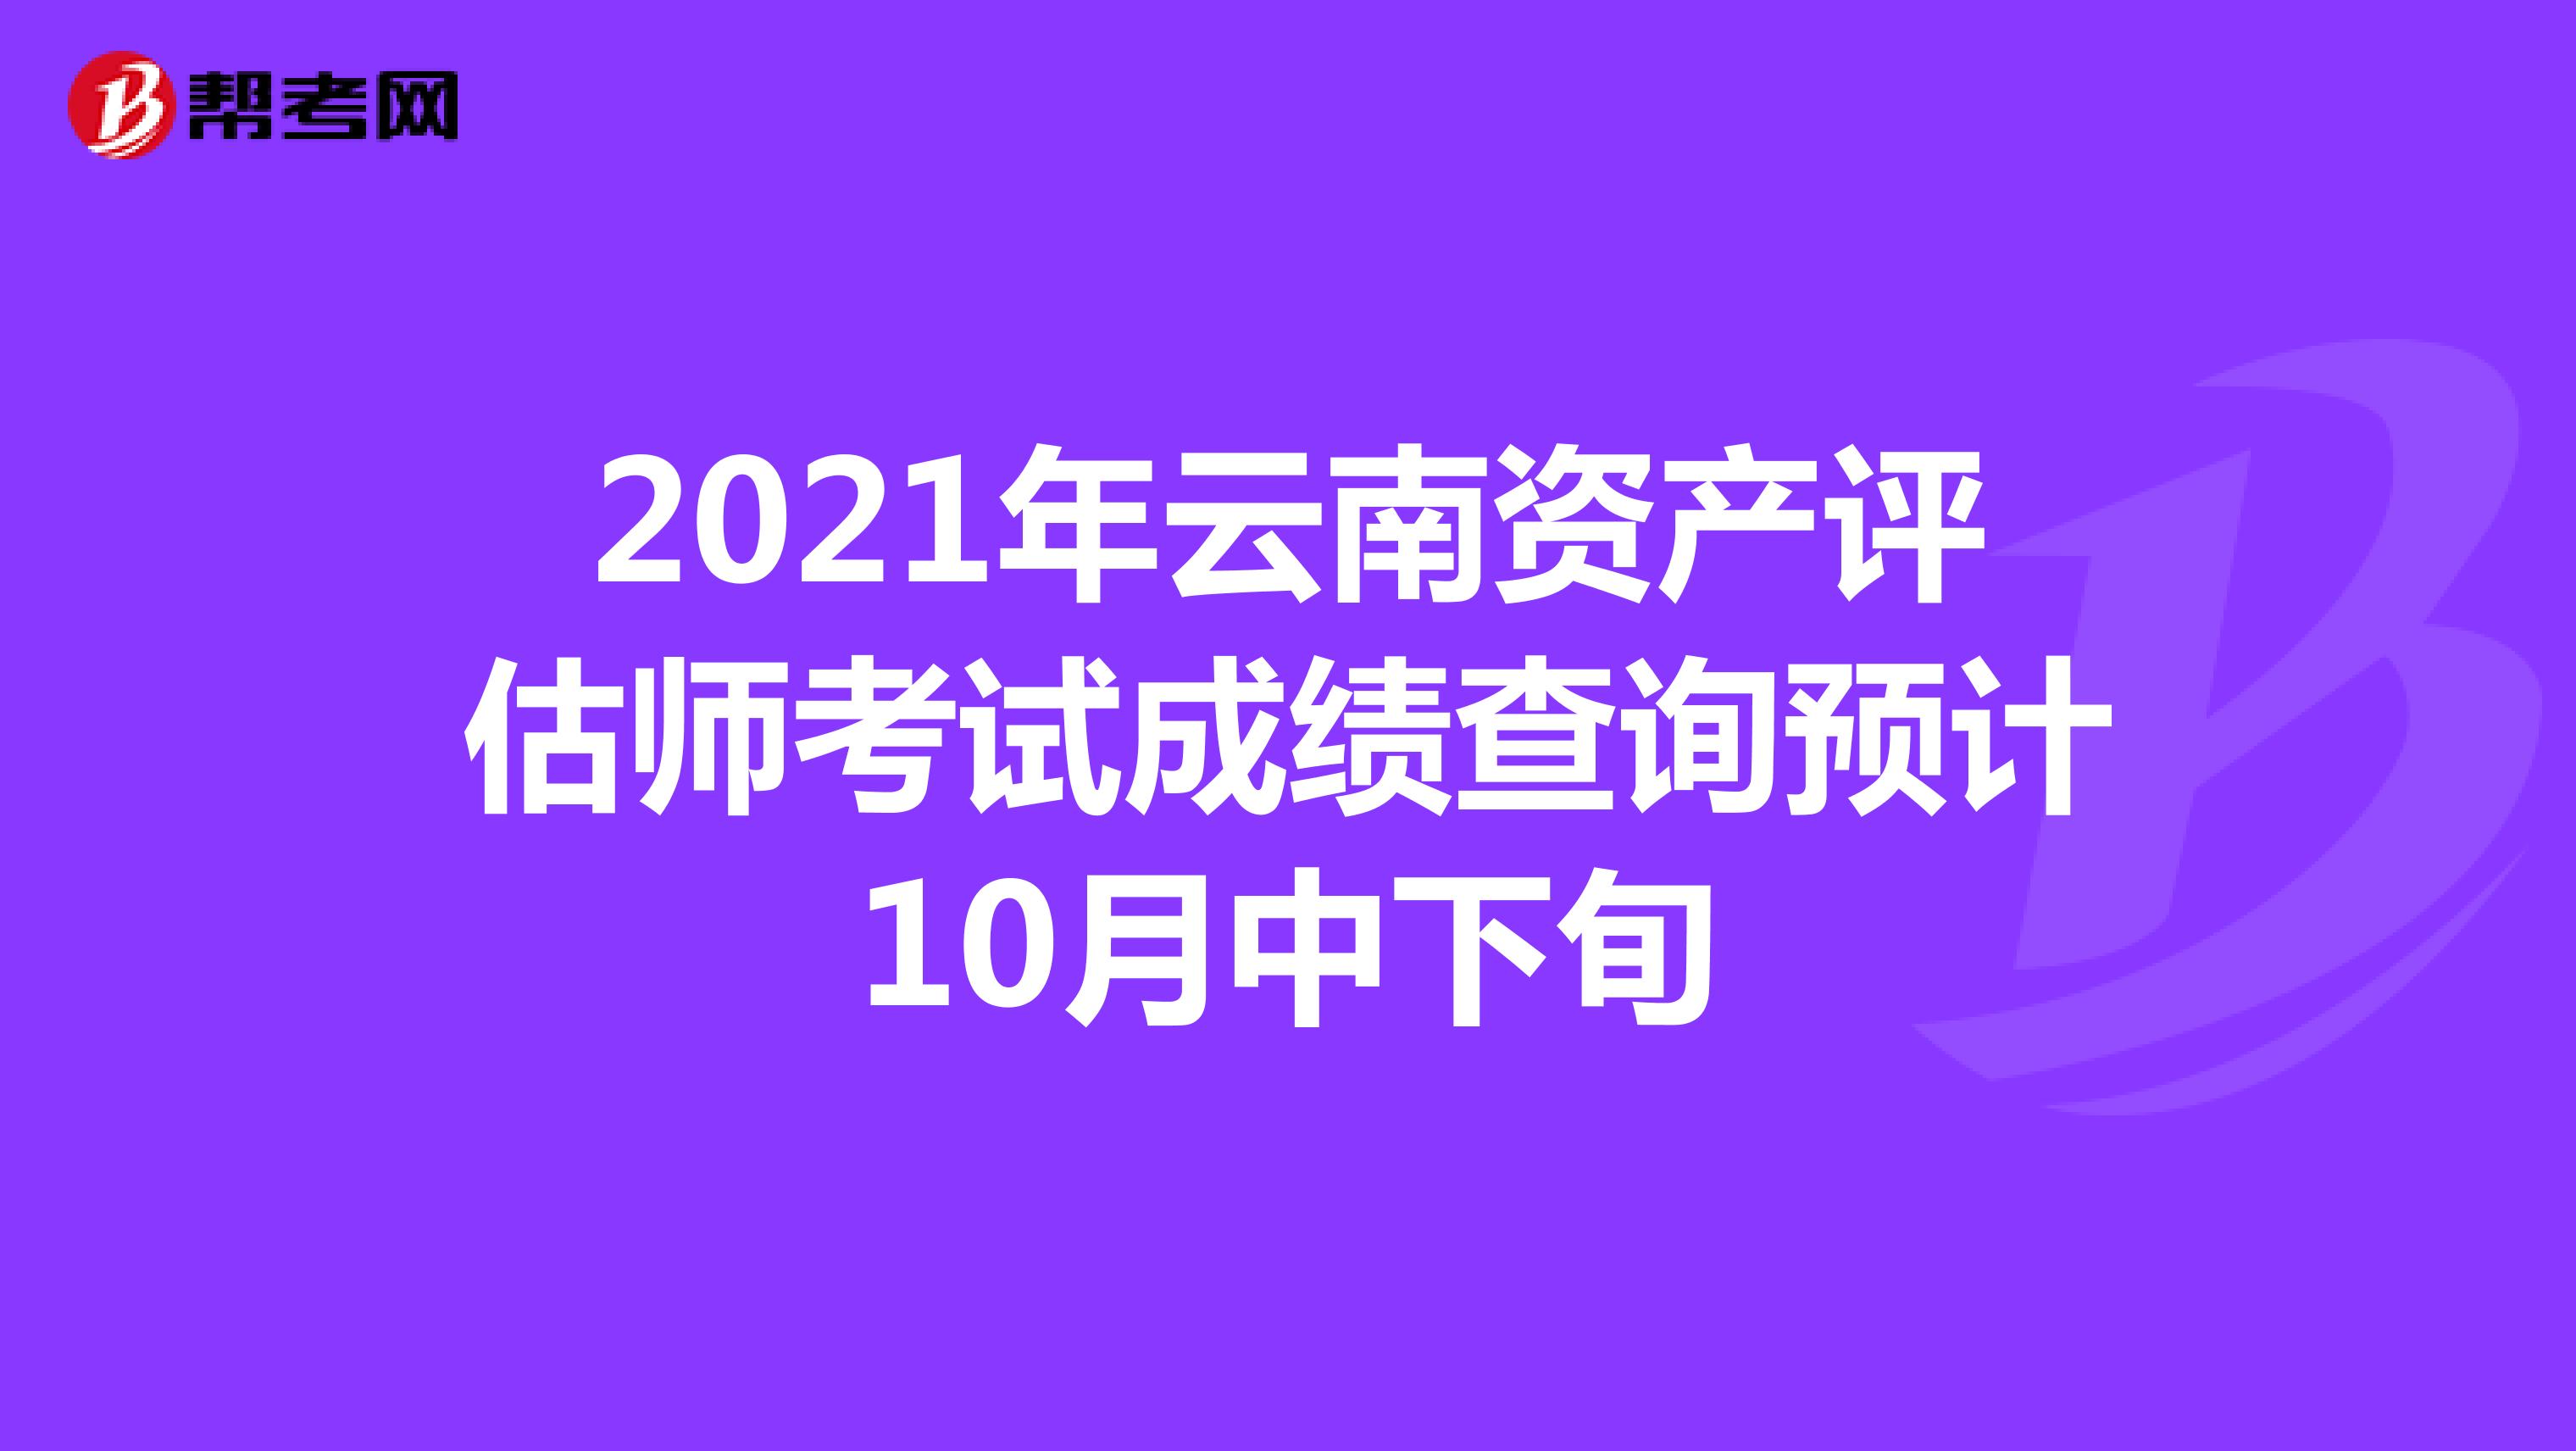 2021年云南资产评估师考试成绩查询预计10月中下旬